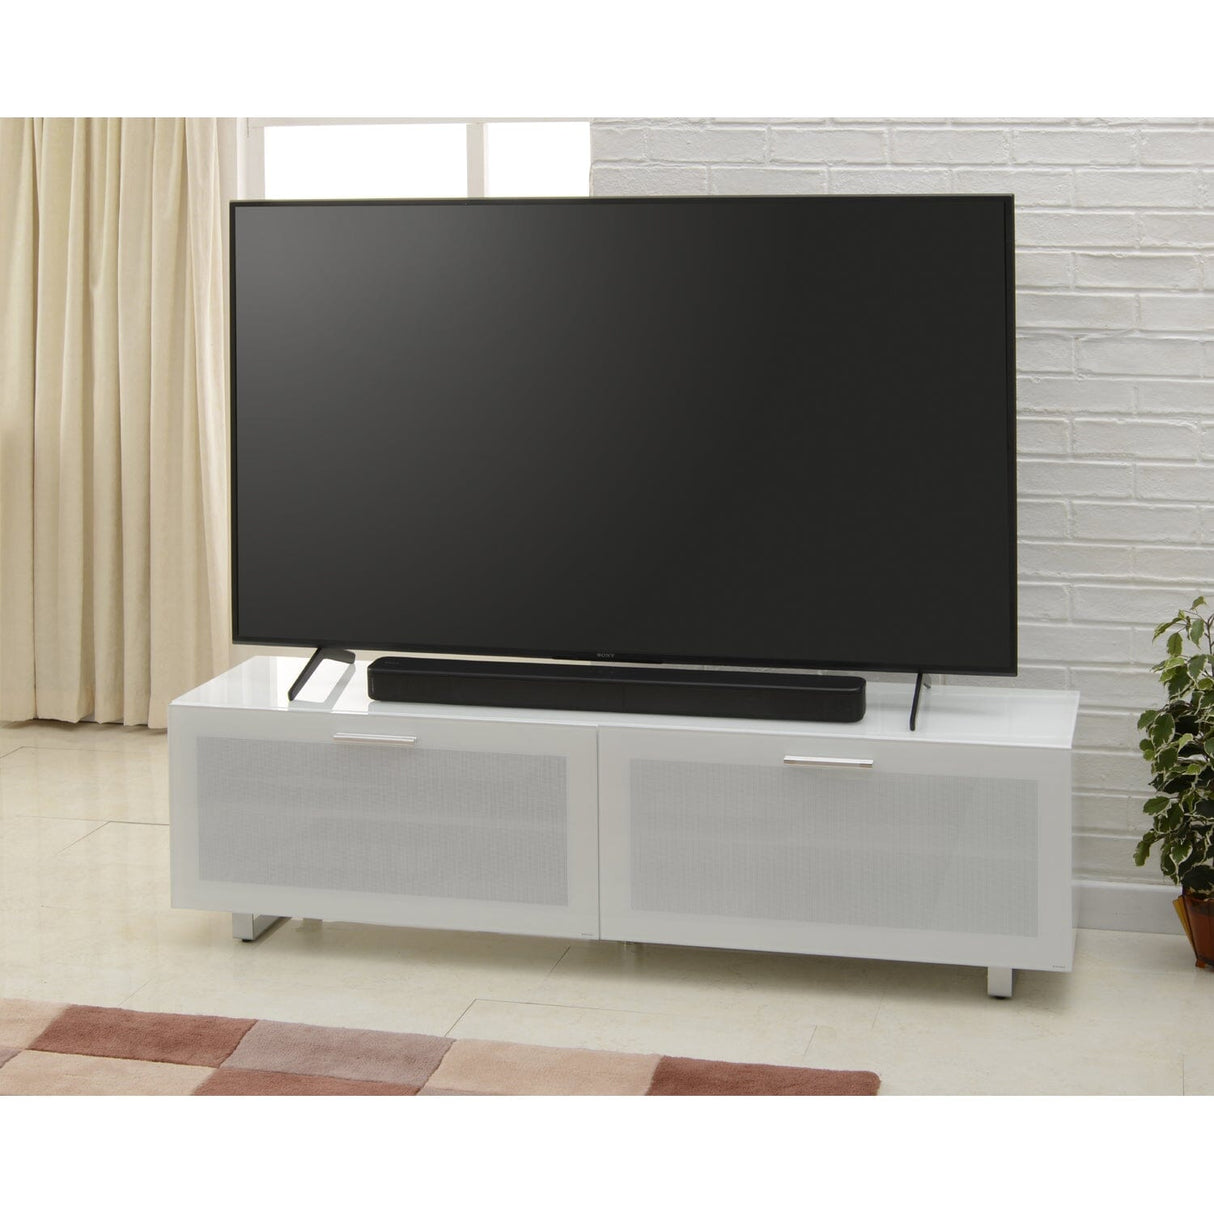 TTAP Sorrento Gloss White 160cm Wide TV Cabinet (SOR-1600-WHT)